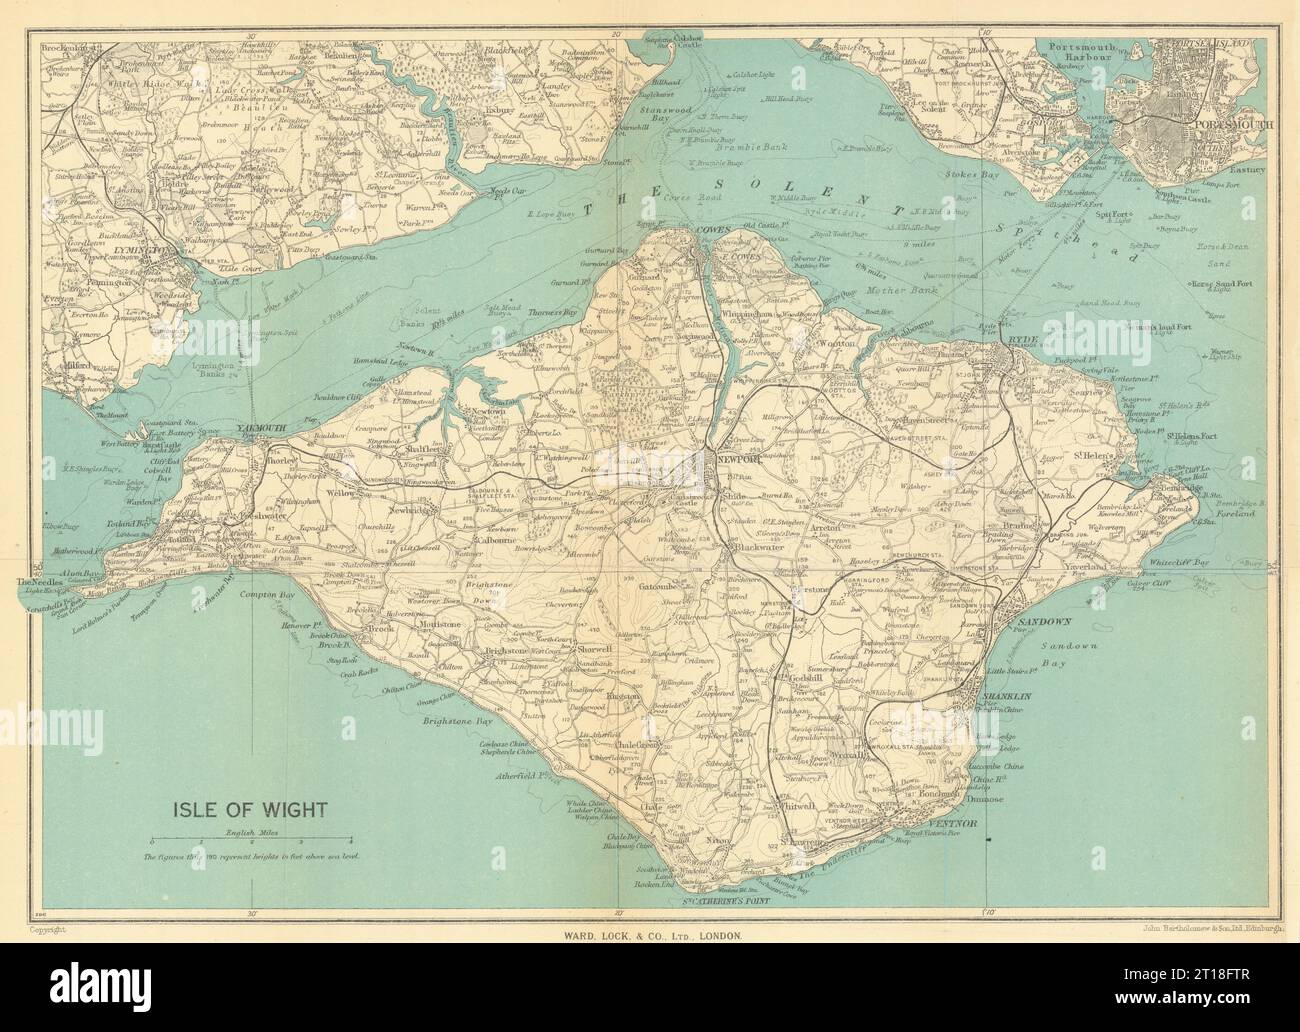 ISOLA DI WIGHT con rete ferroviaria completa. Cowes Ryde. Mappa WARD LOCK 1947 Foto Stock